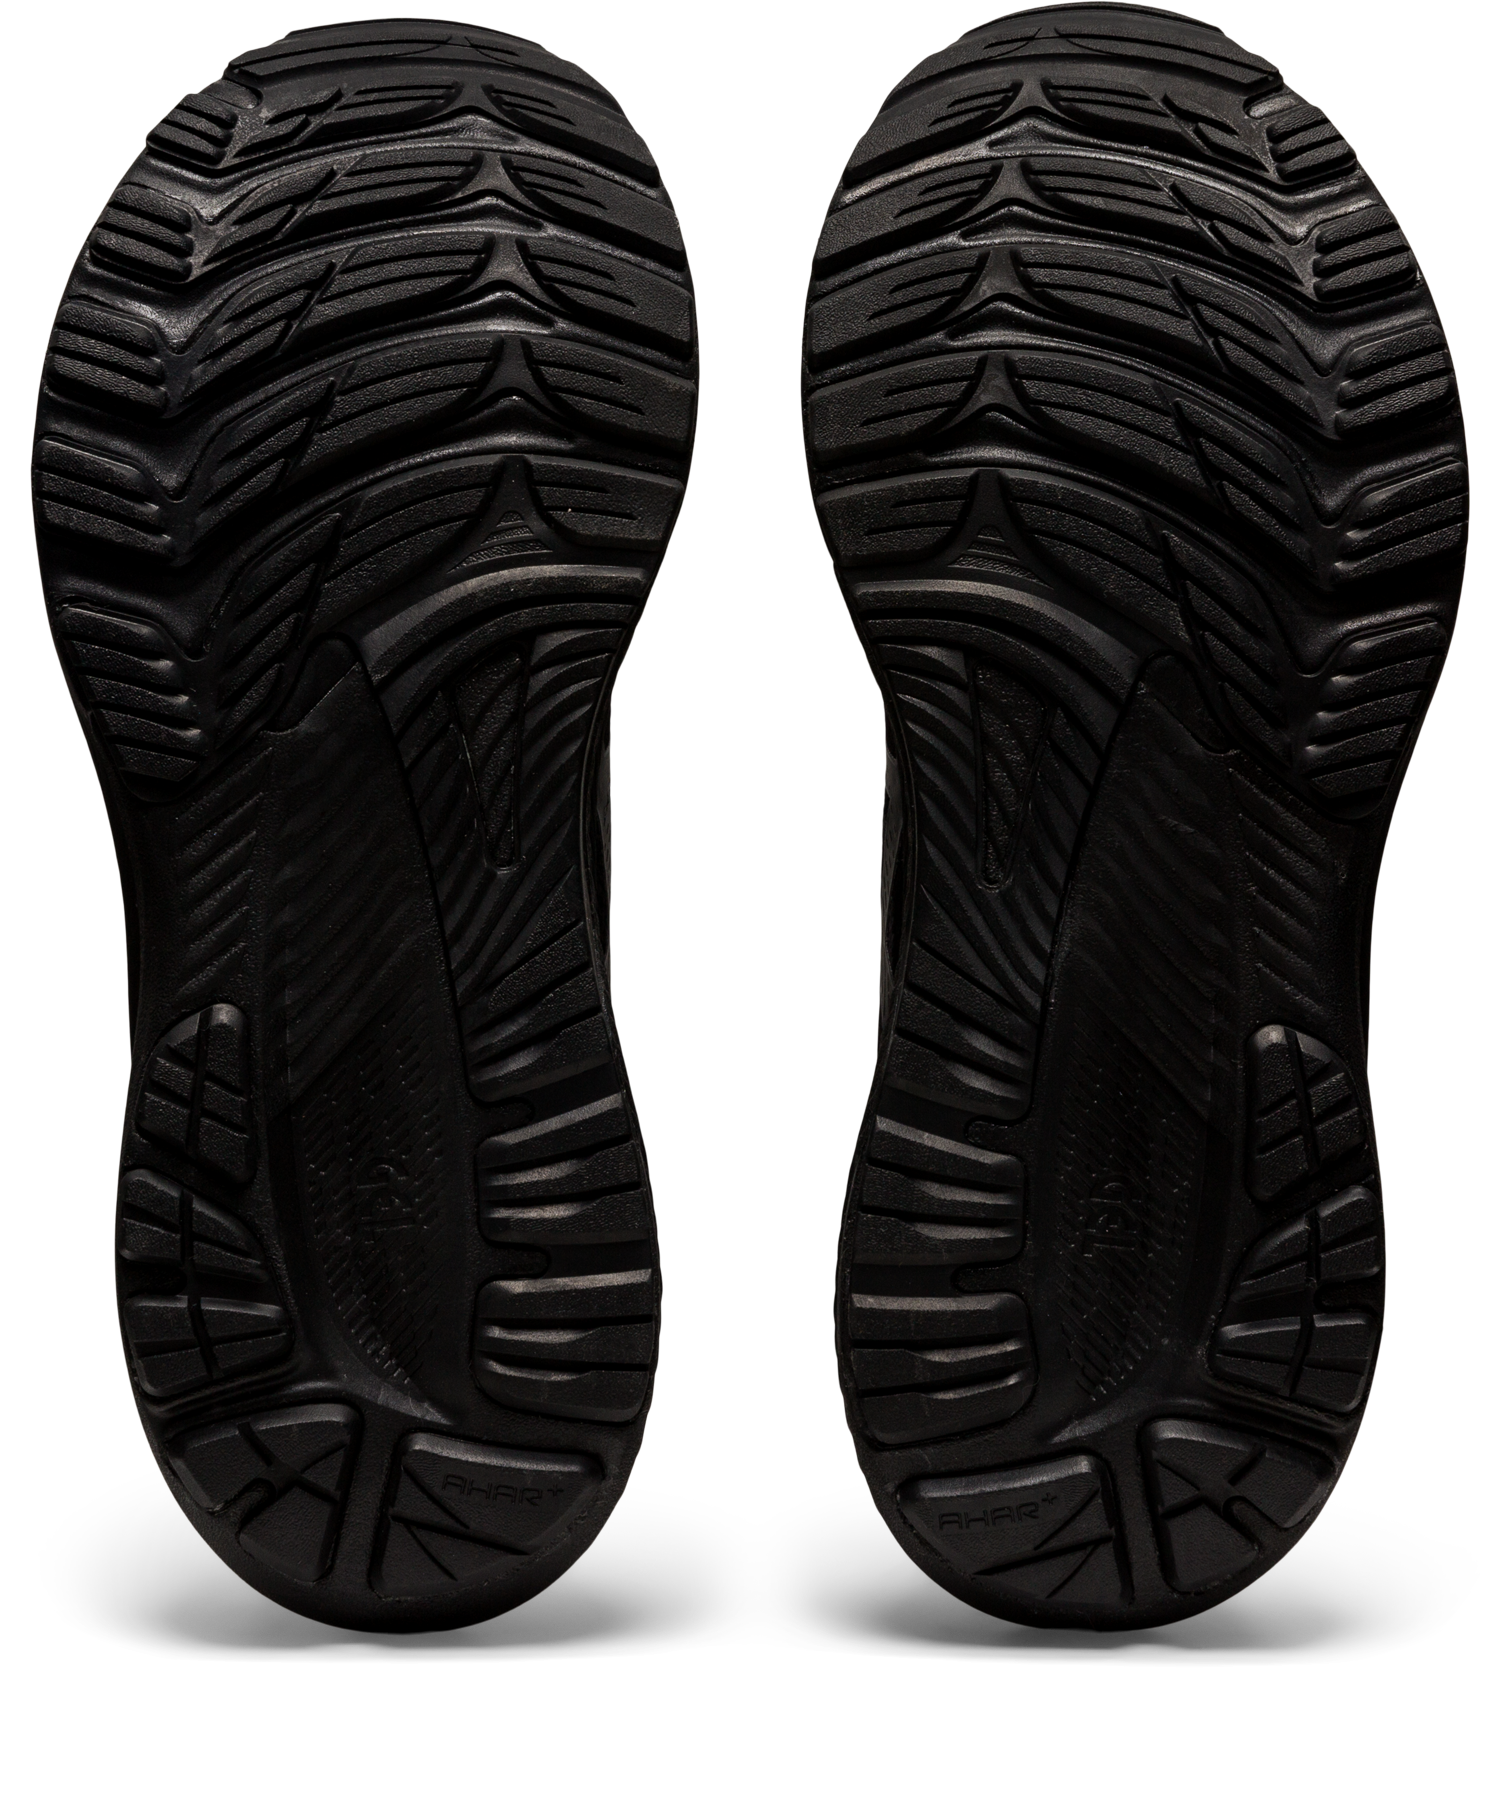 Asics Women's Gel-Kayano 29 Running Shoes in Black/Black